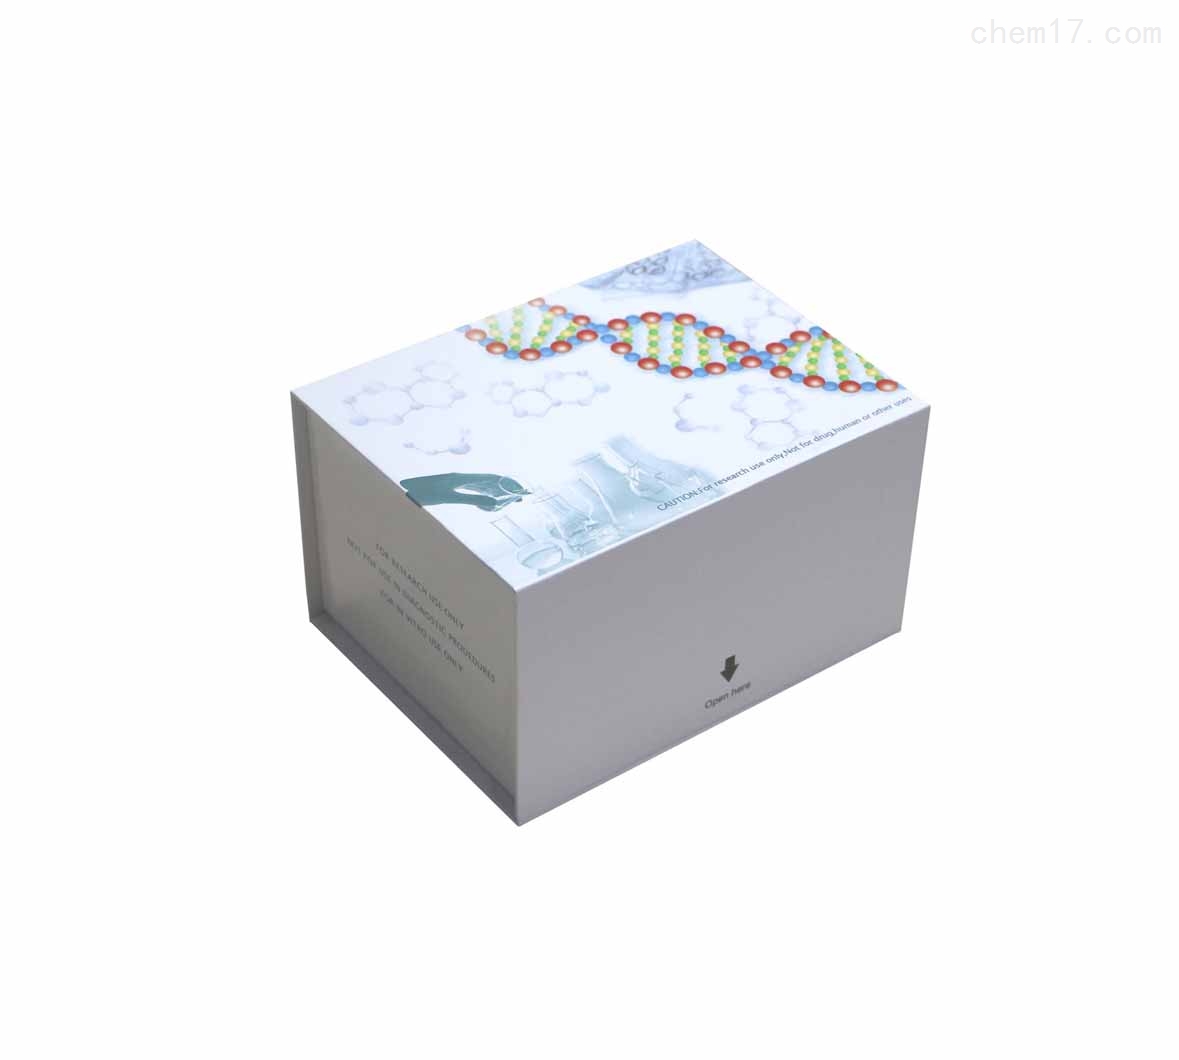 I型胶原蛋白(Collagen I)ELISA试剂盒免费待测